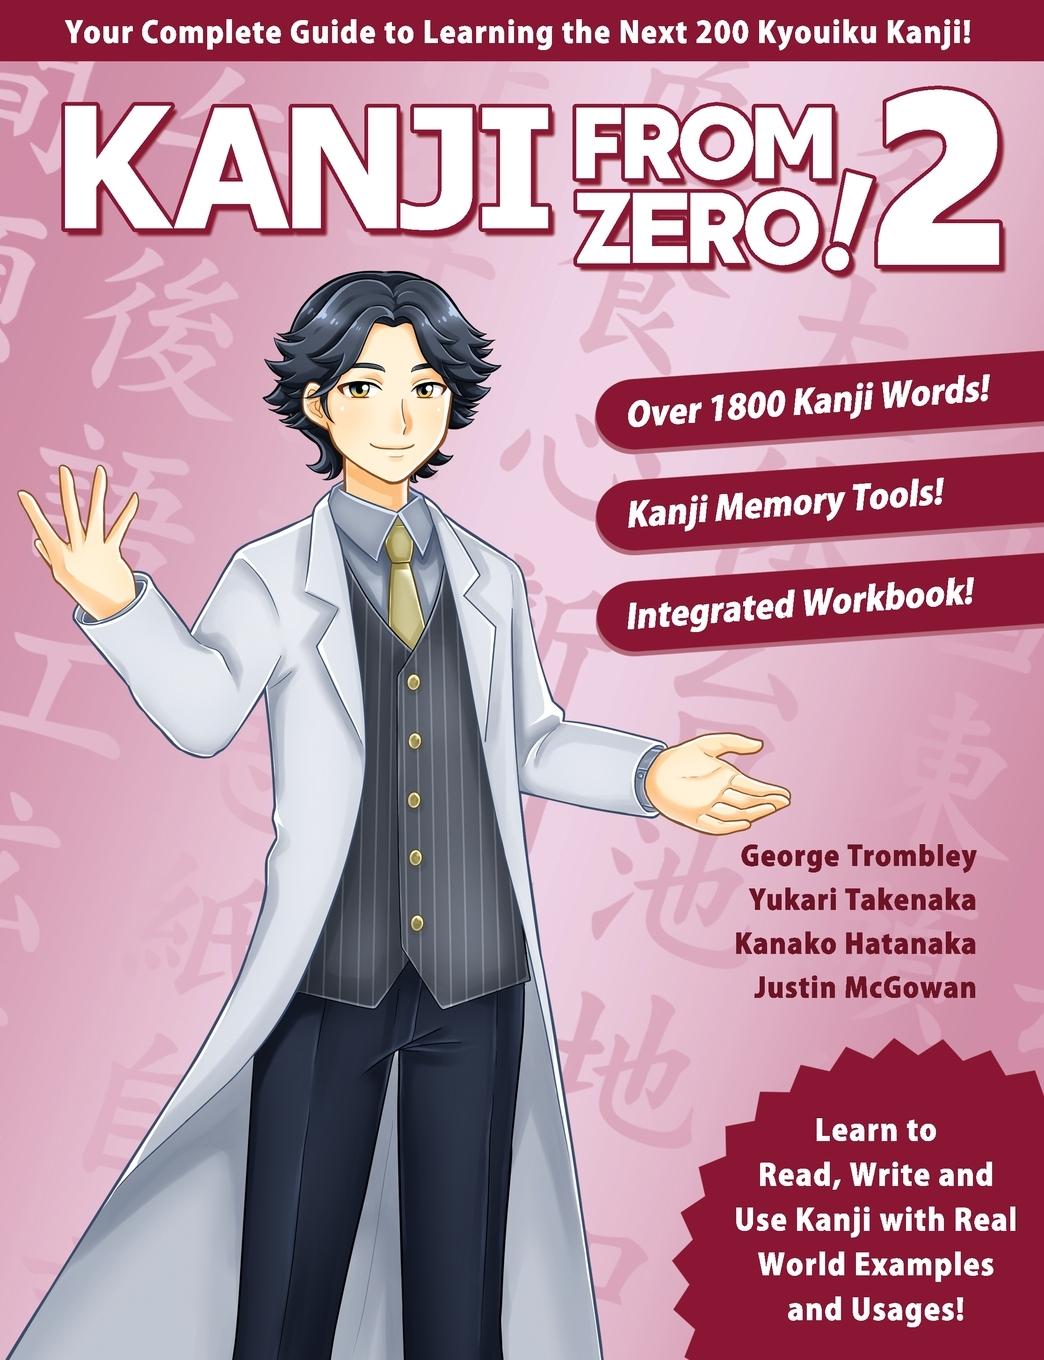 Book Kanji From Zero! 2 Yukari Takenaka